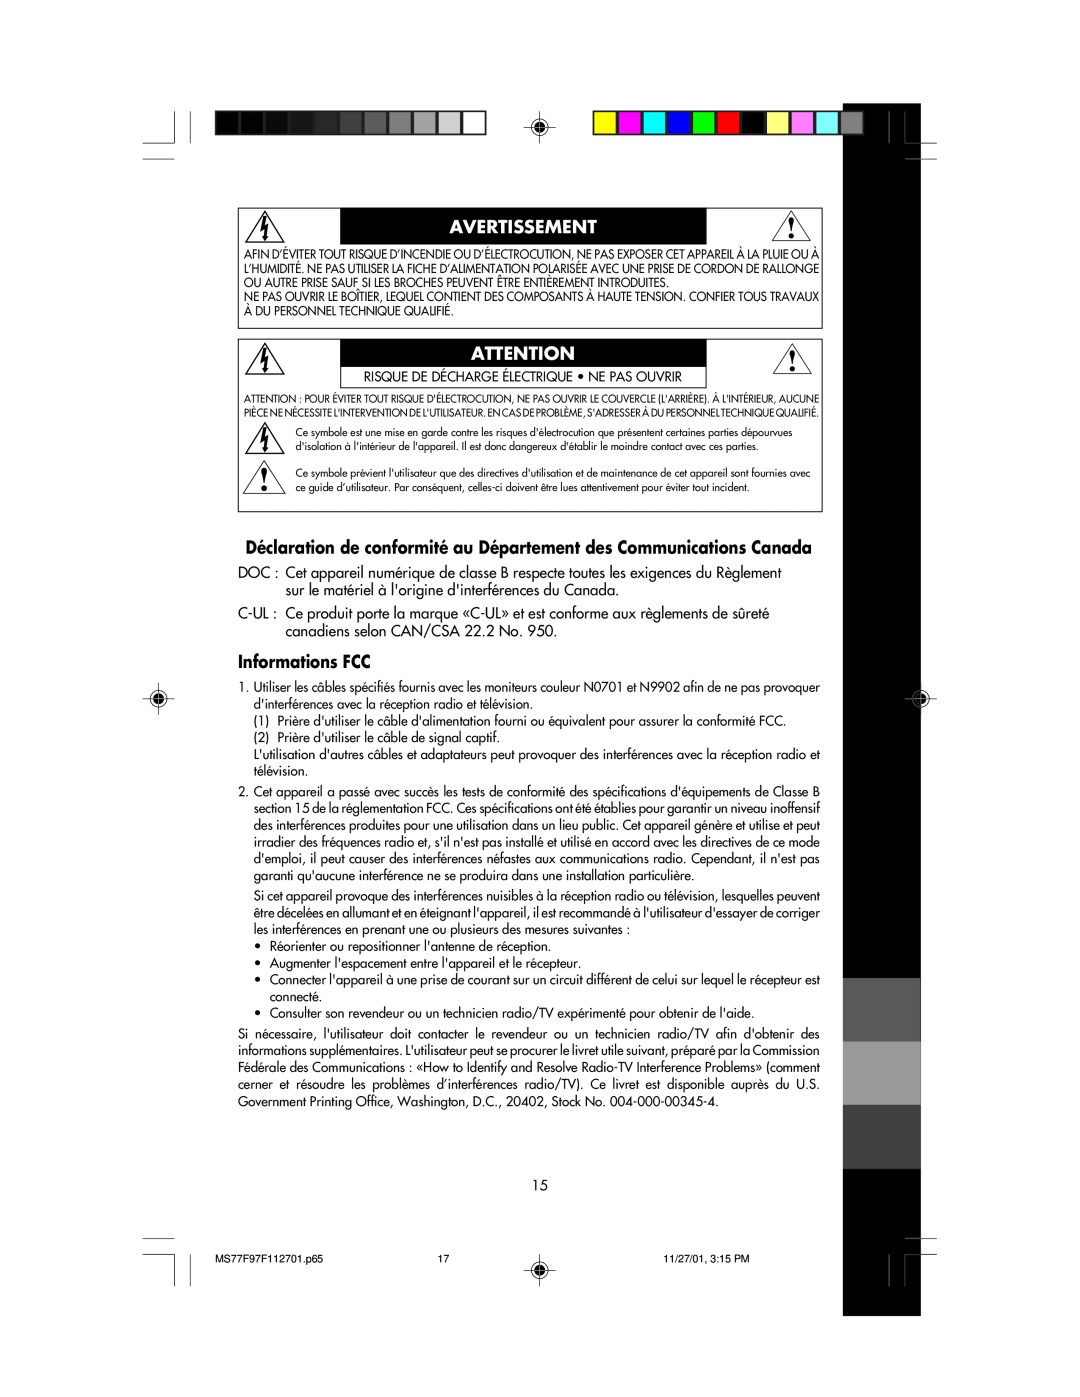 NEC 77F, 97F manual Déclaration de conformité au Département des Communications Canada, Informations FCC, Avertissement 